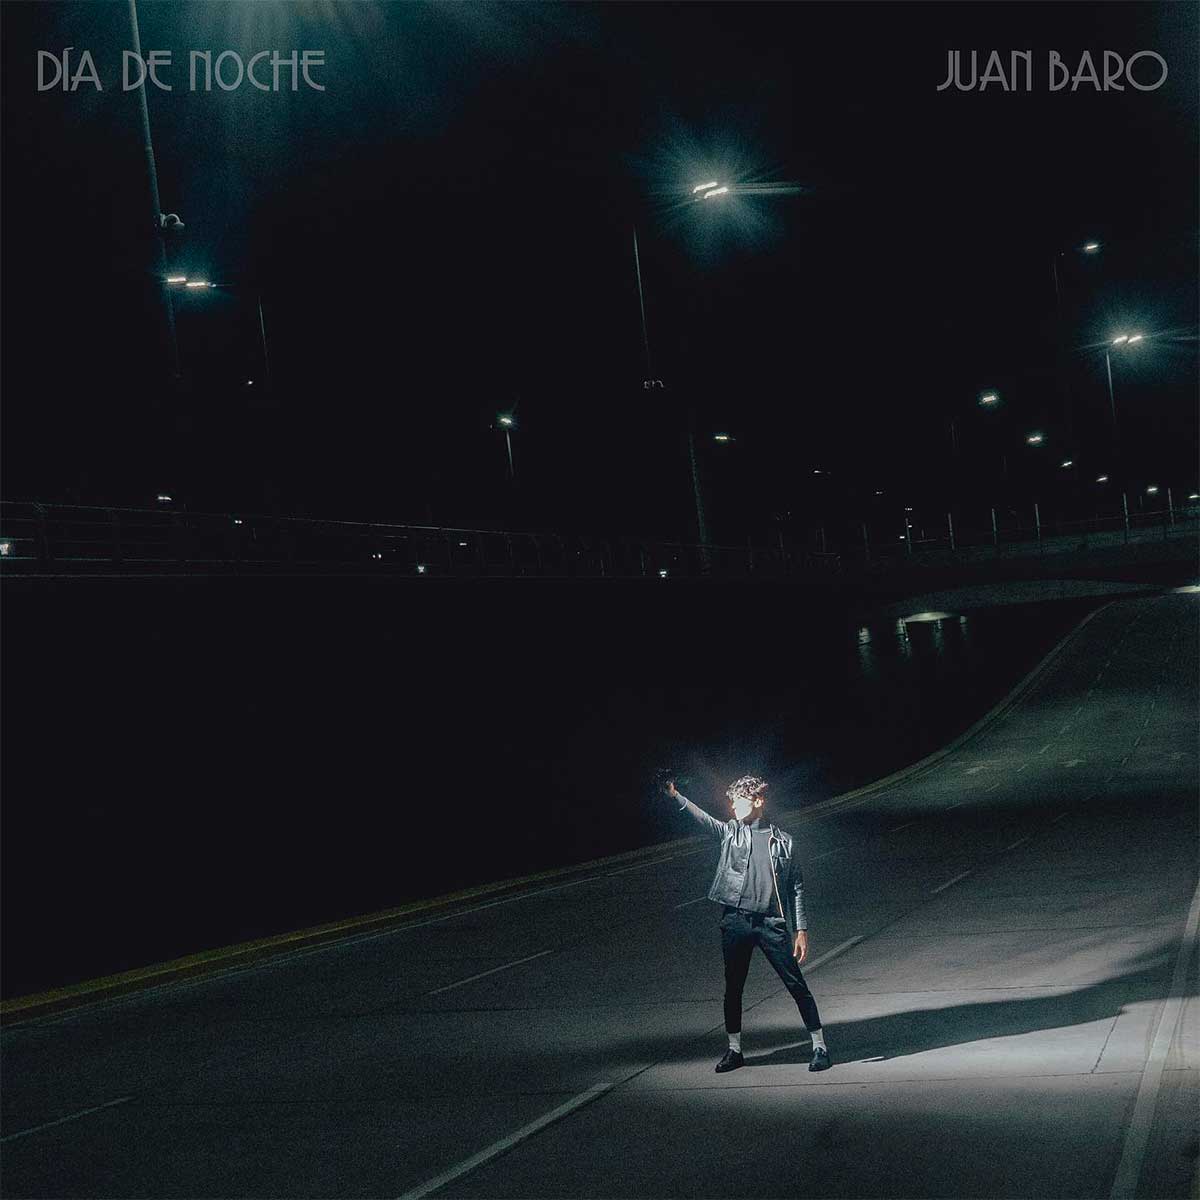 Tapa de "Día de noche", disco de Juan Baro